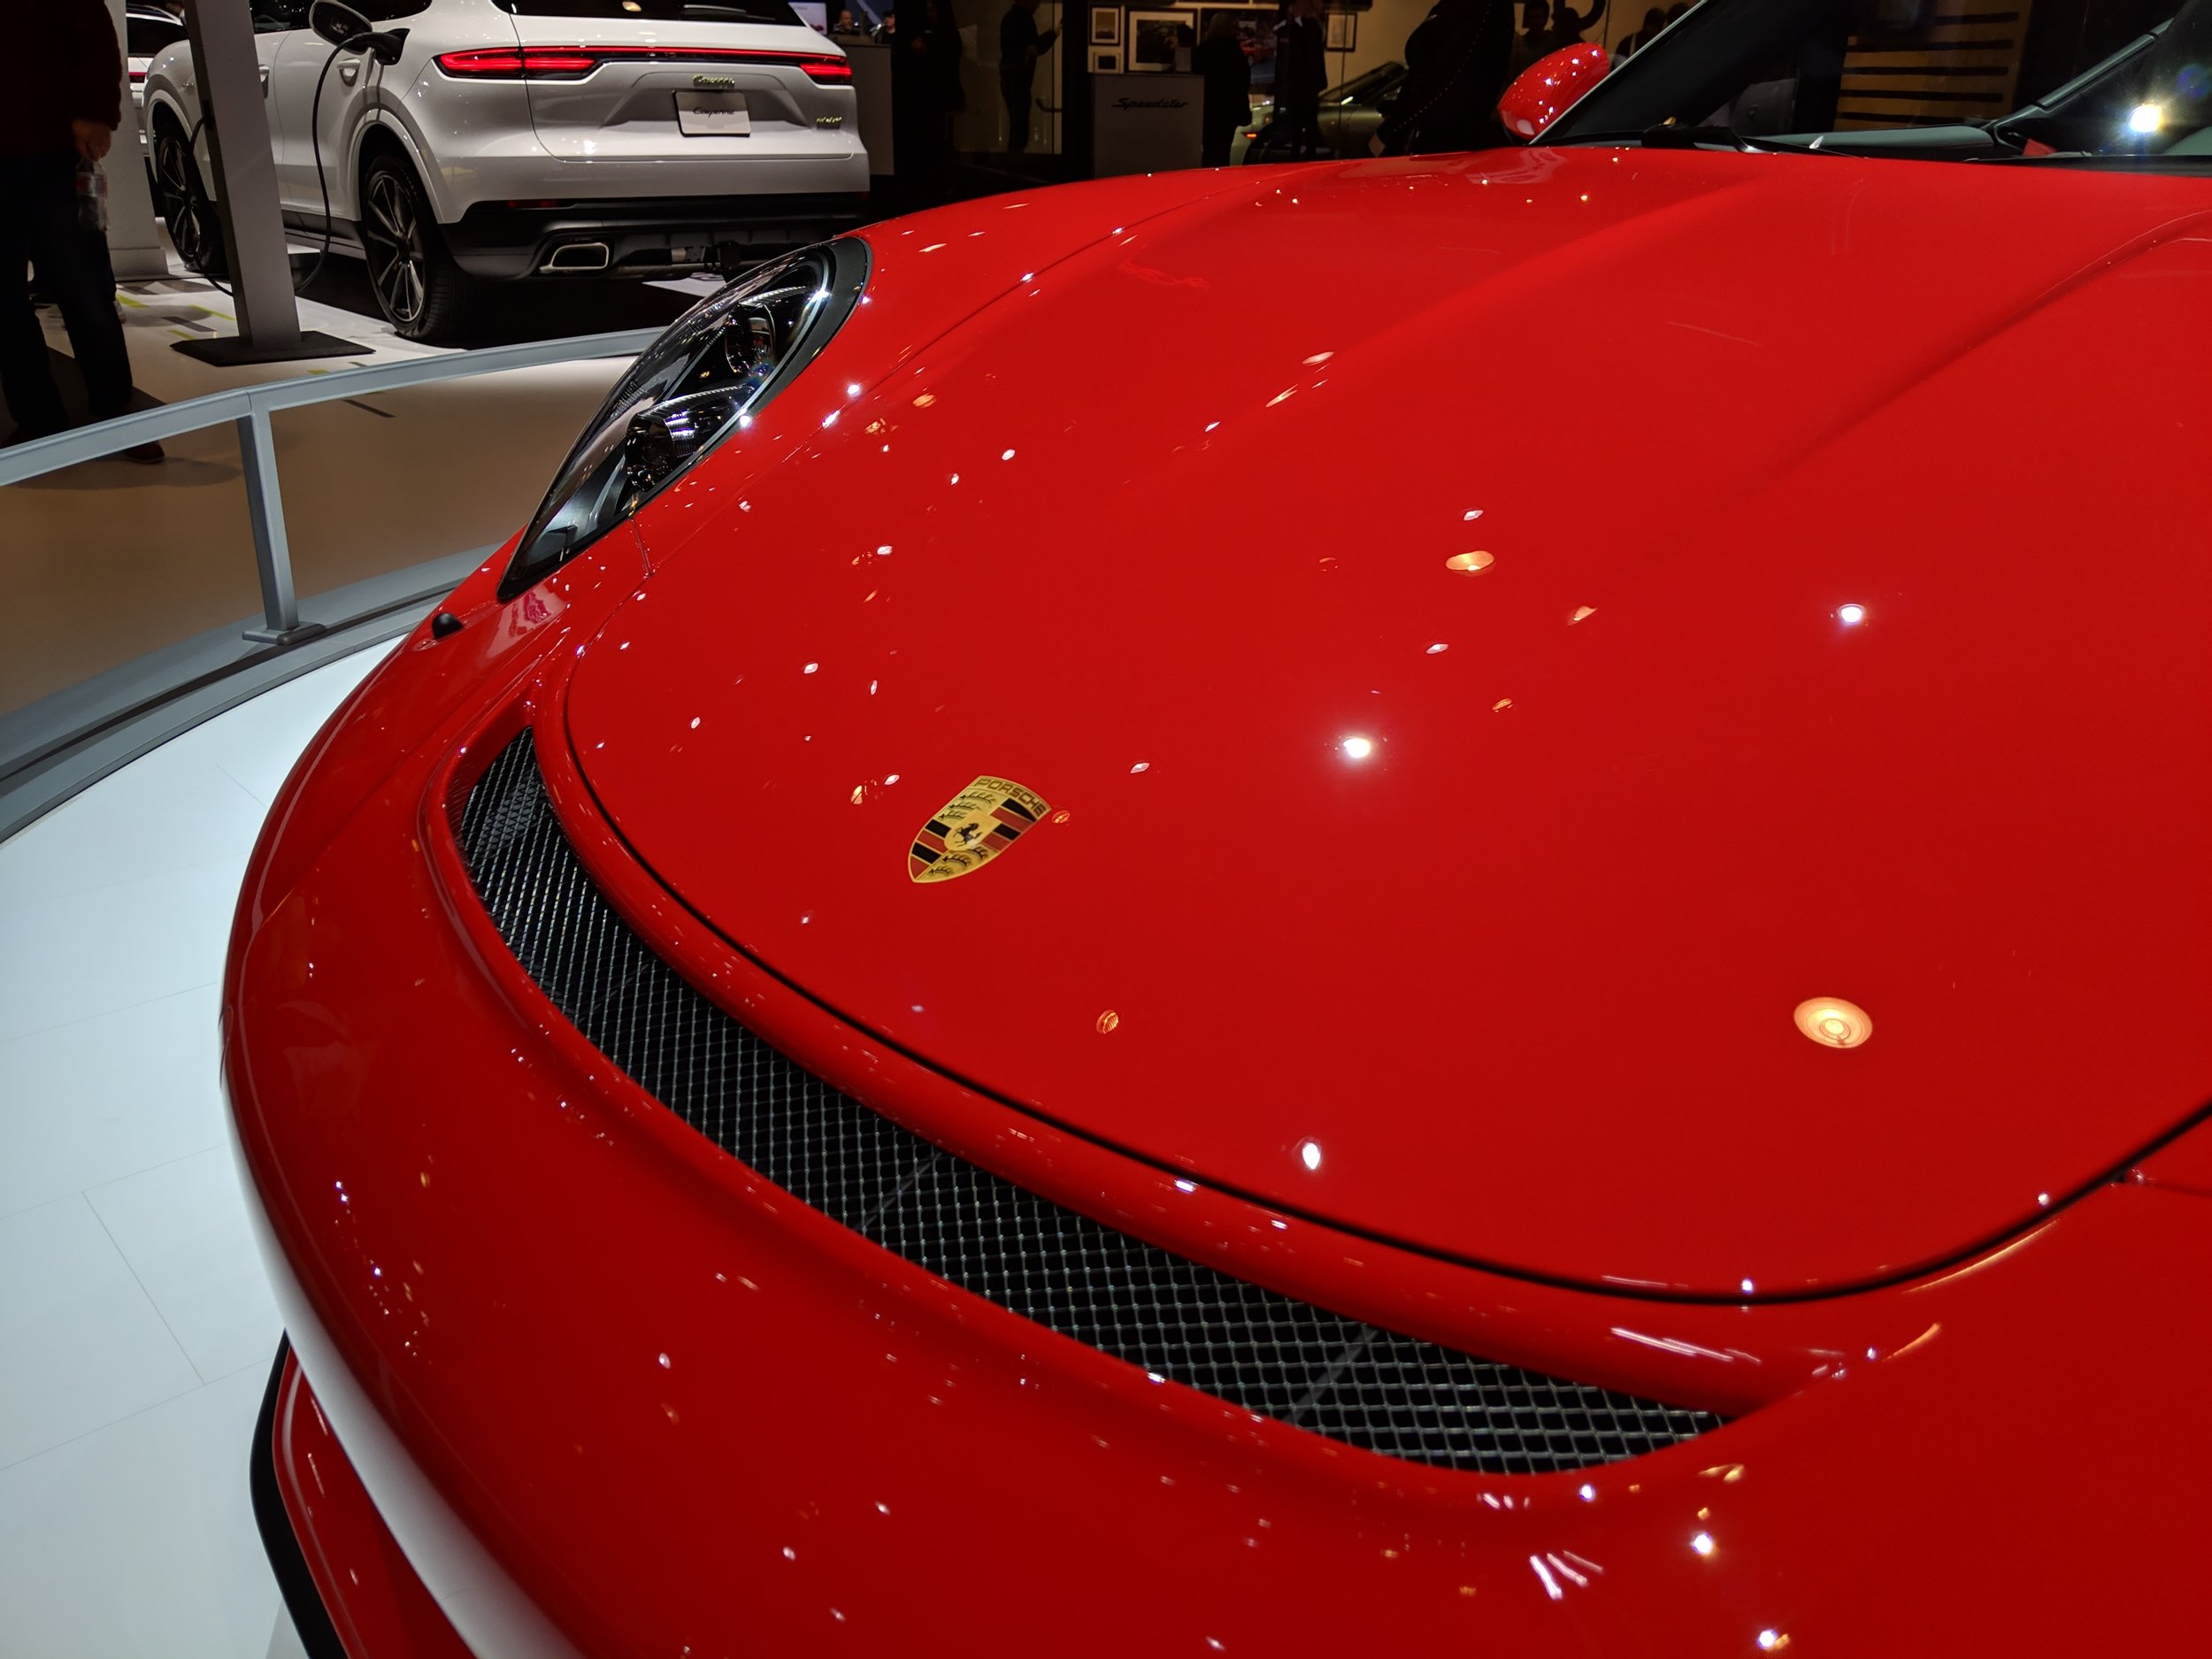 Porsche_speedster_red_front.jpg